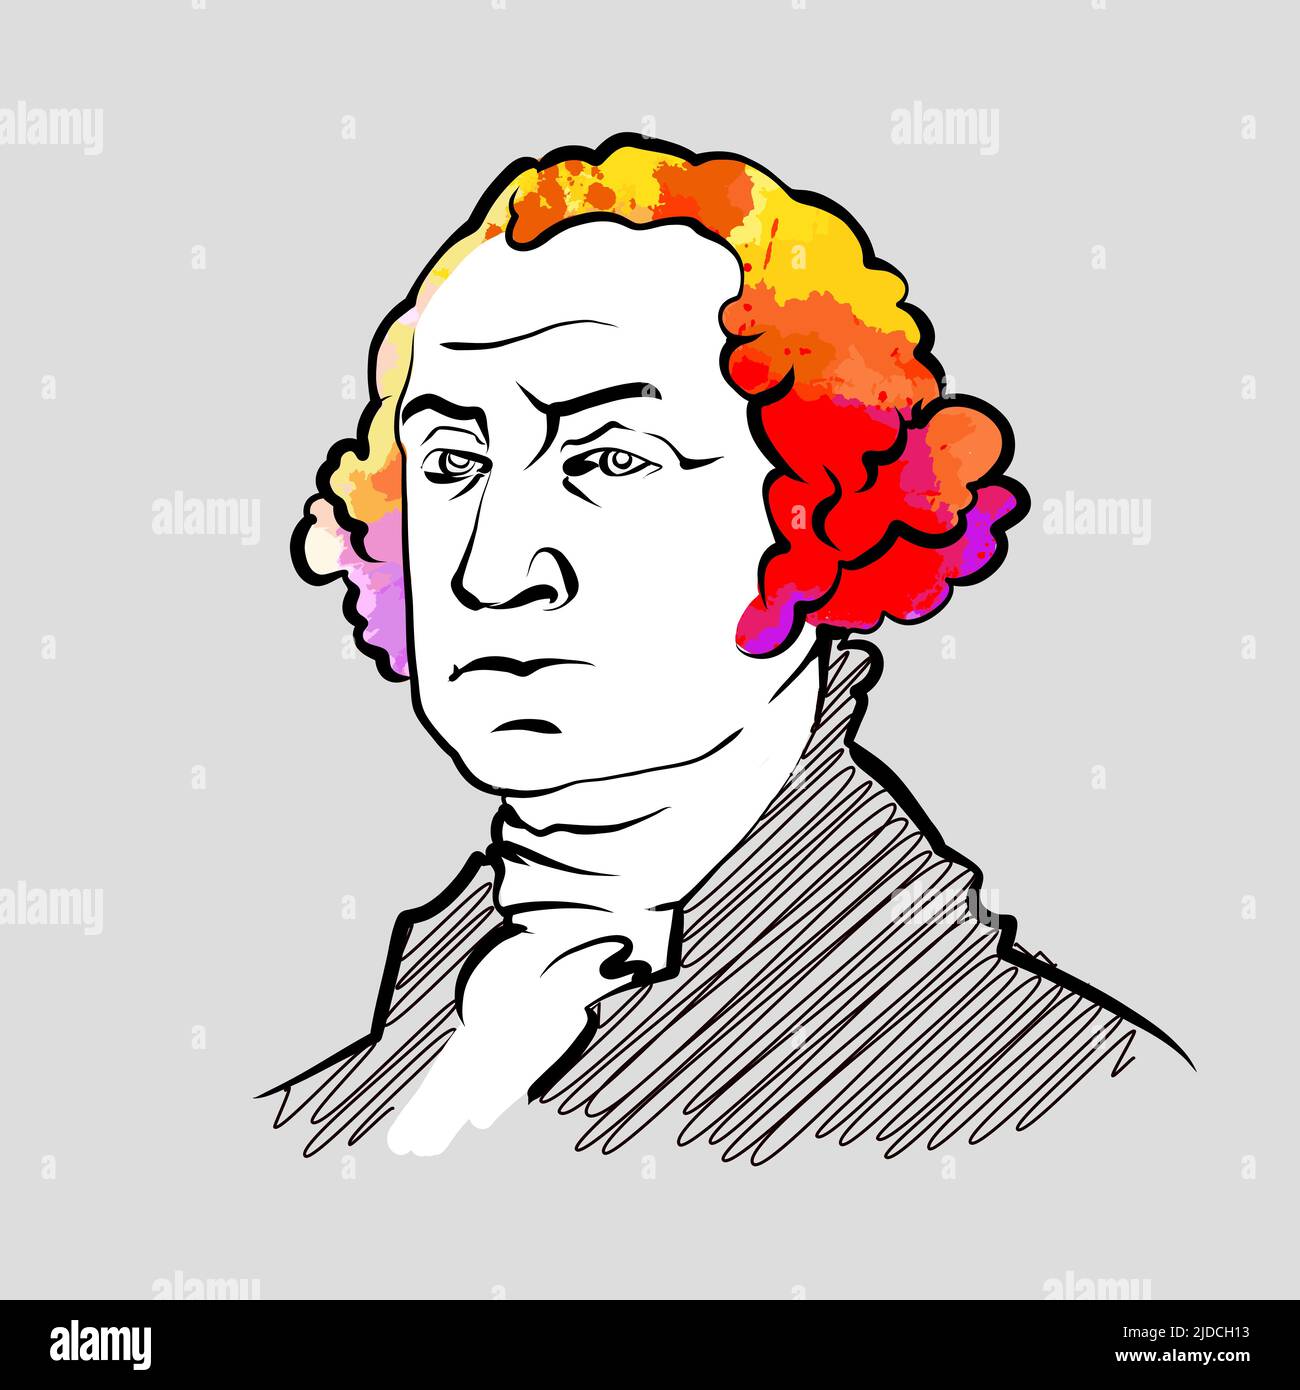 George Washington disegno vettoriale colorato dei capelli. Schizzo del contorno disegnato a mano. Disegno da utilizzare su qualsiasi progetto di marketing e per la rivendita come stampa. Illustrazione Vettoriale